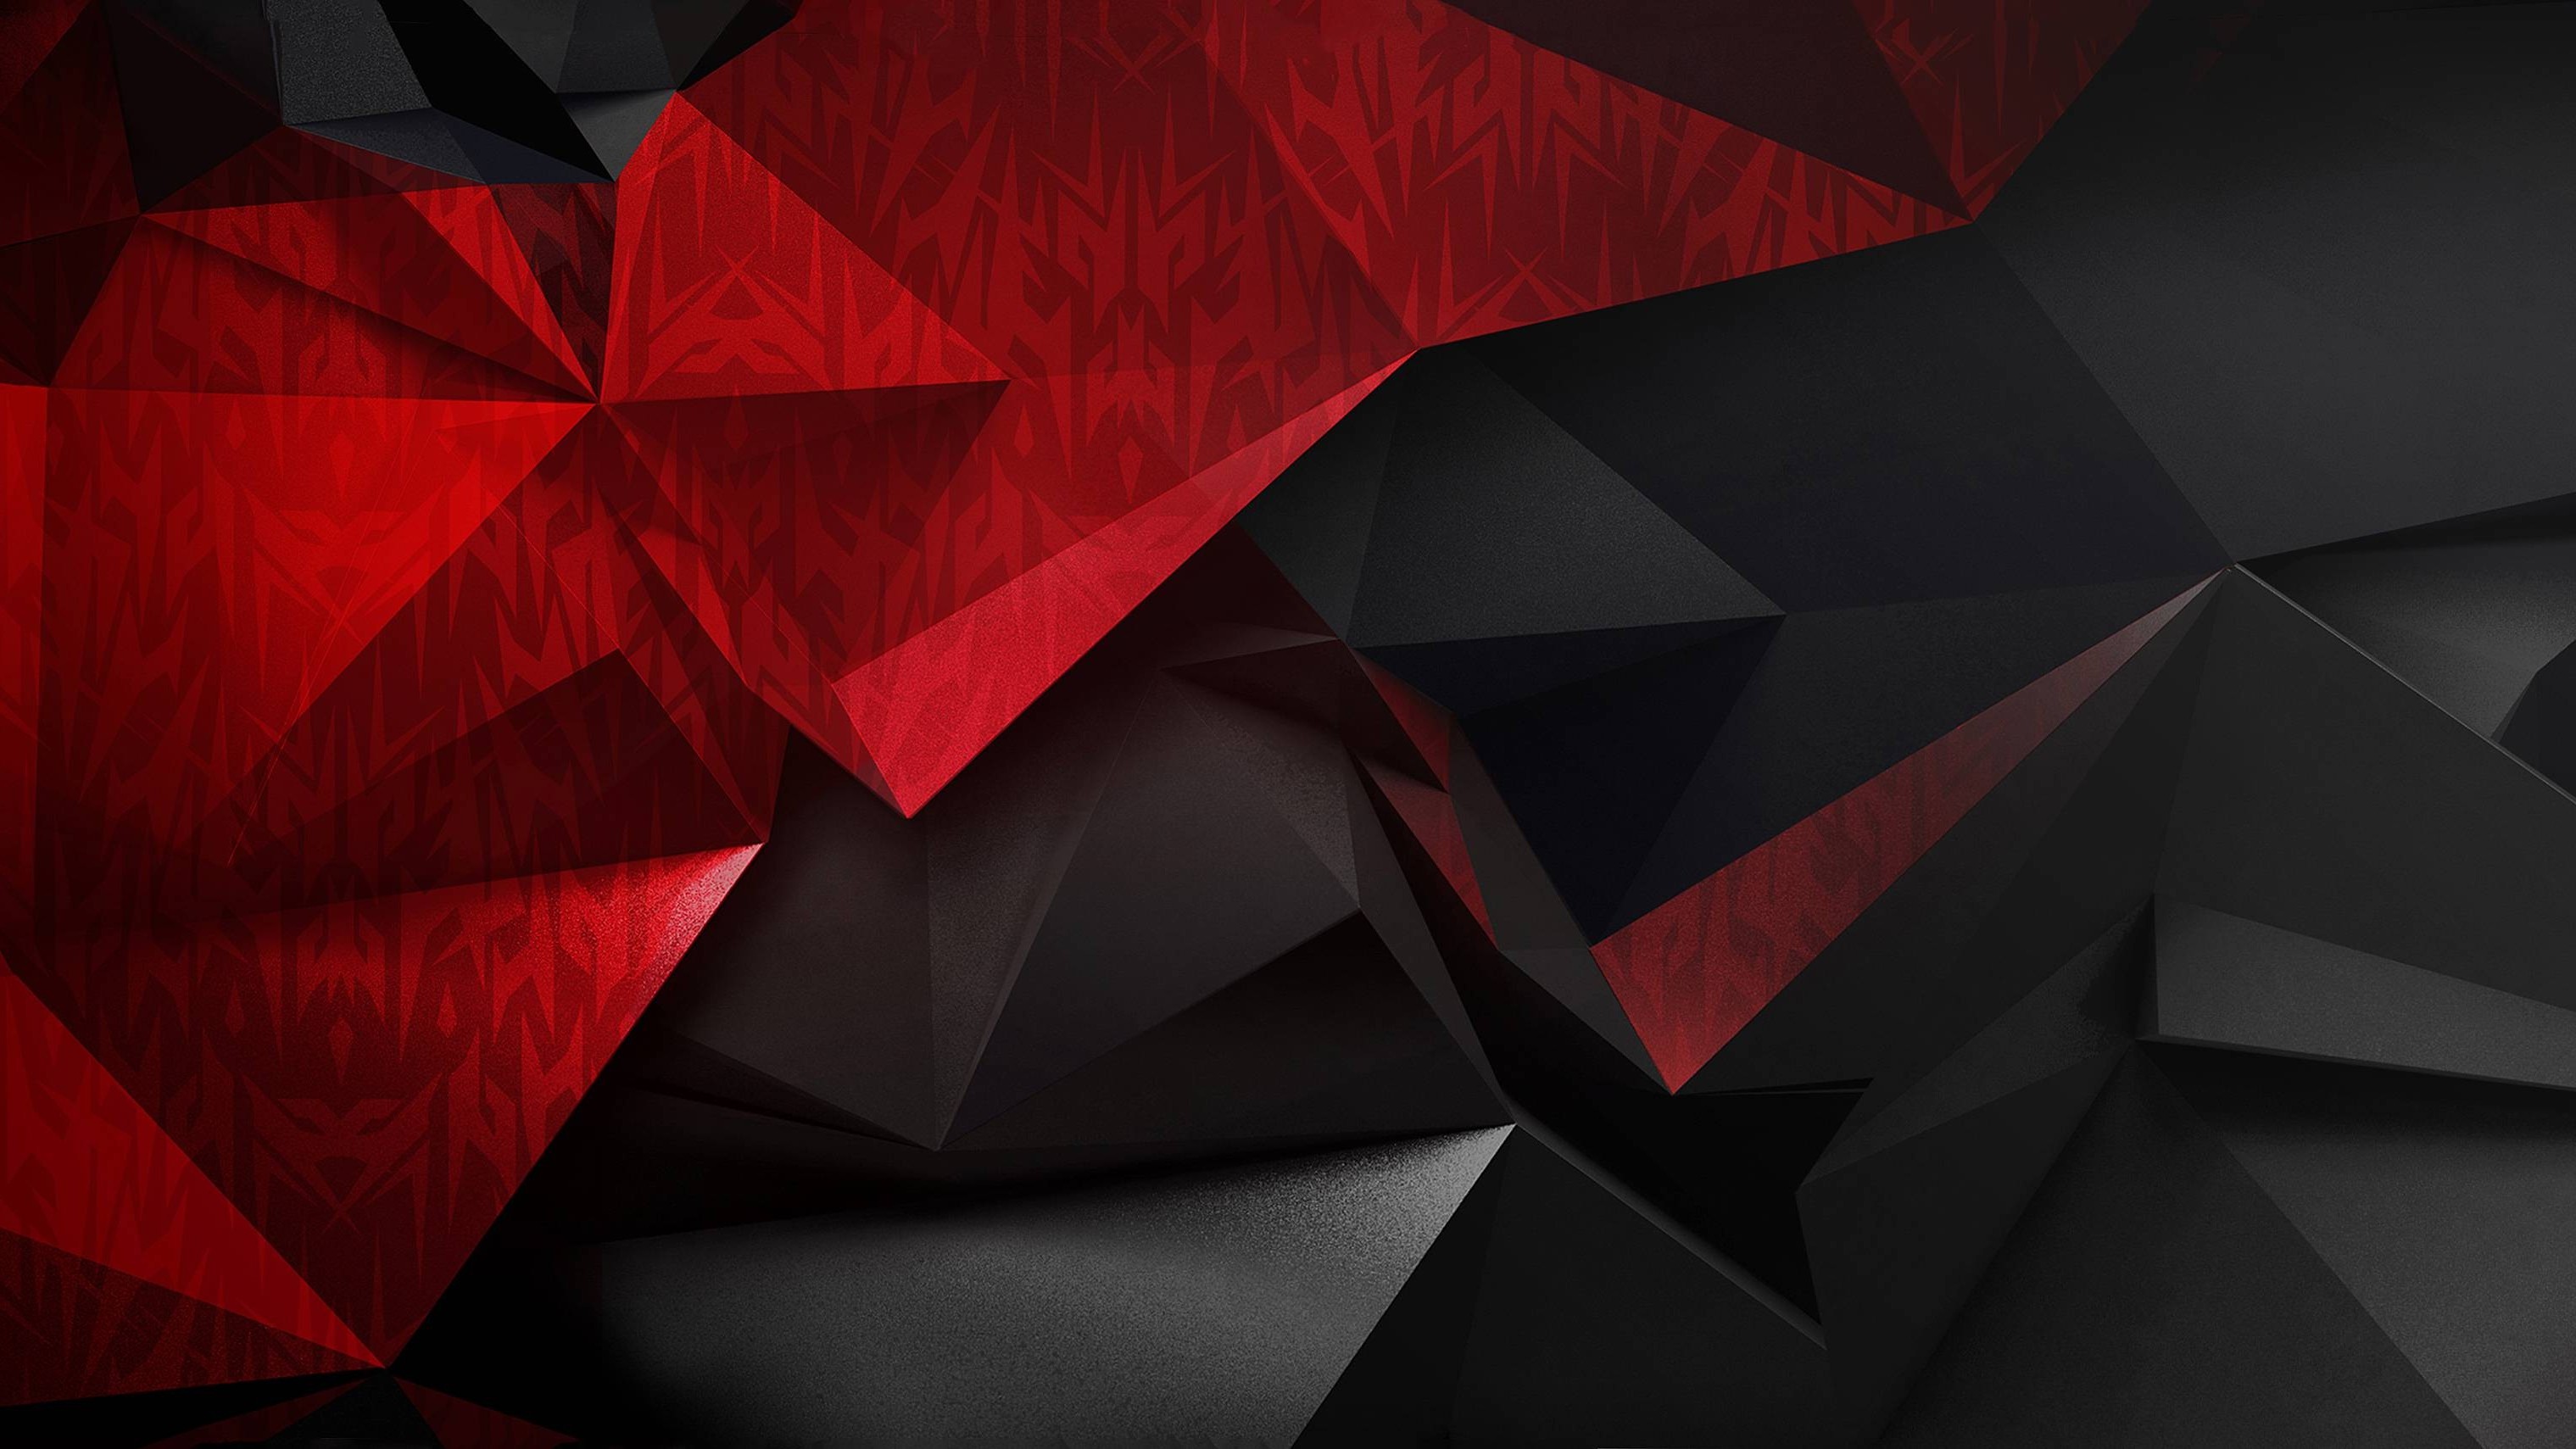 acer predator wallpaper,red,triangle,origami,design,architecture